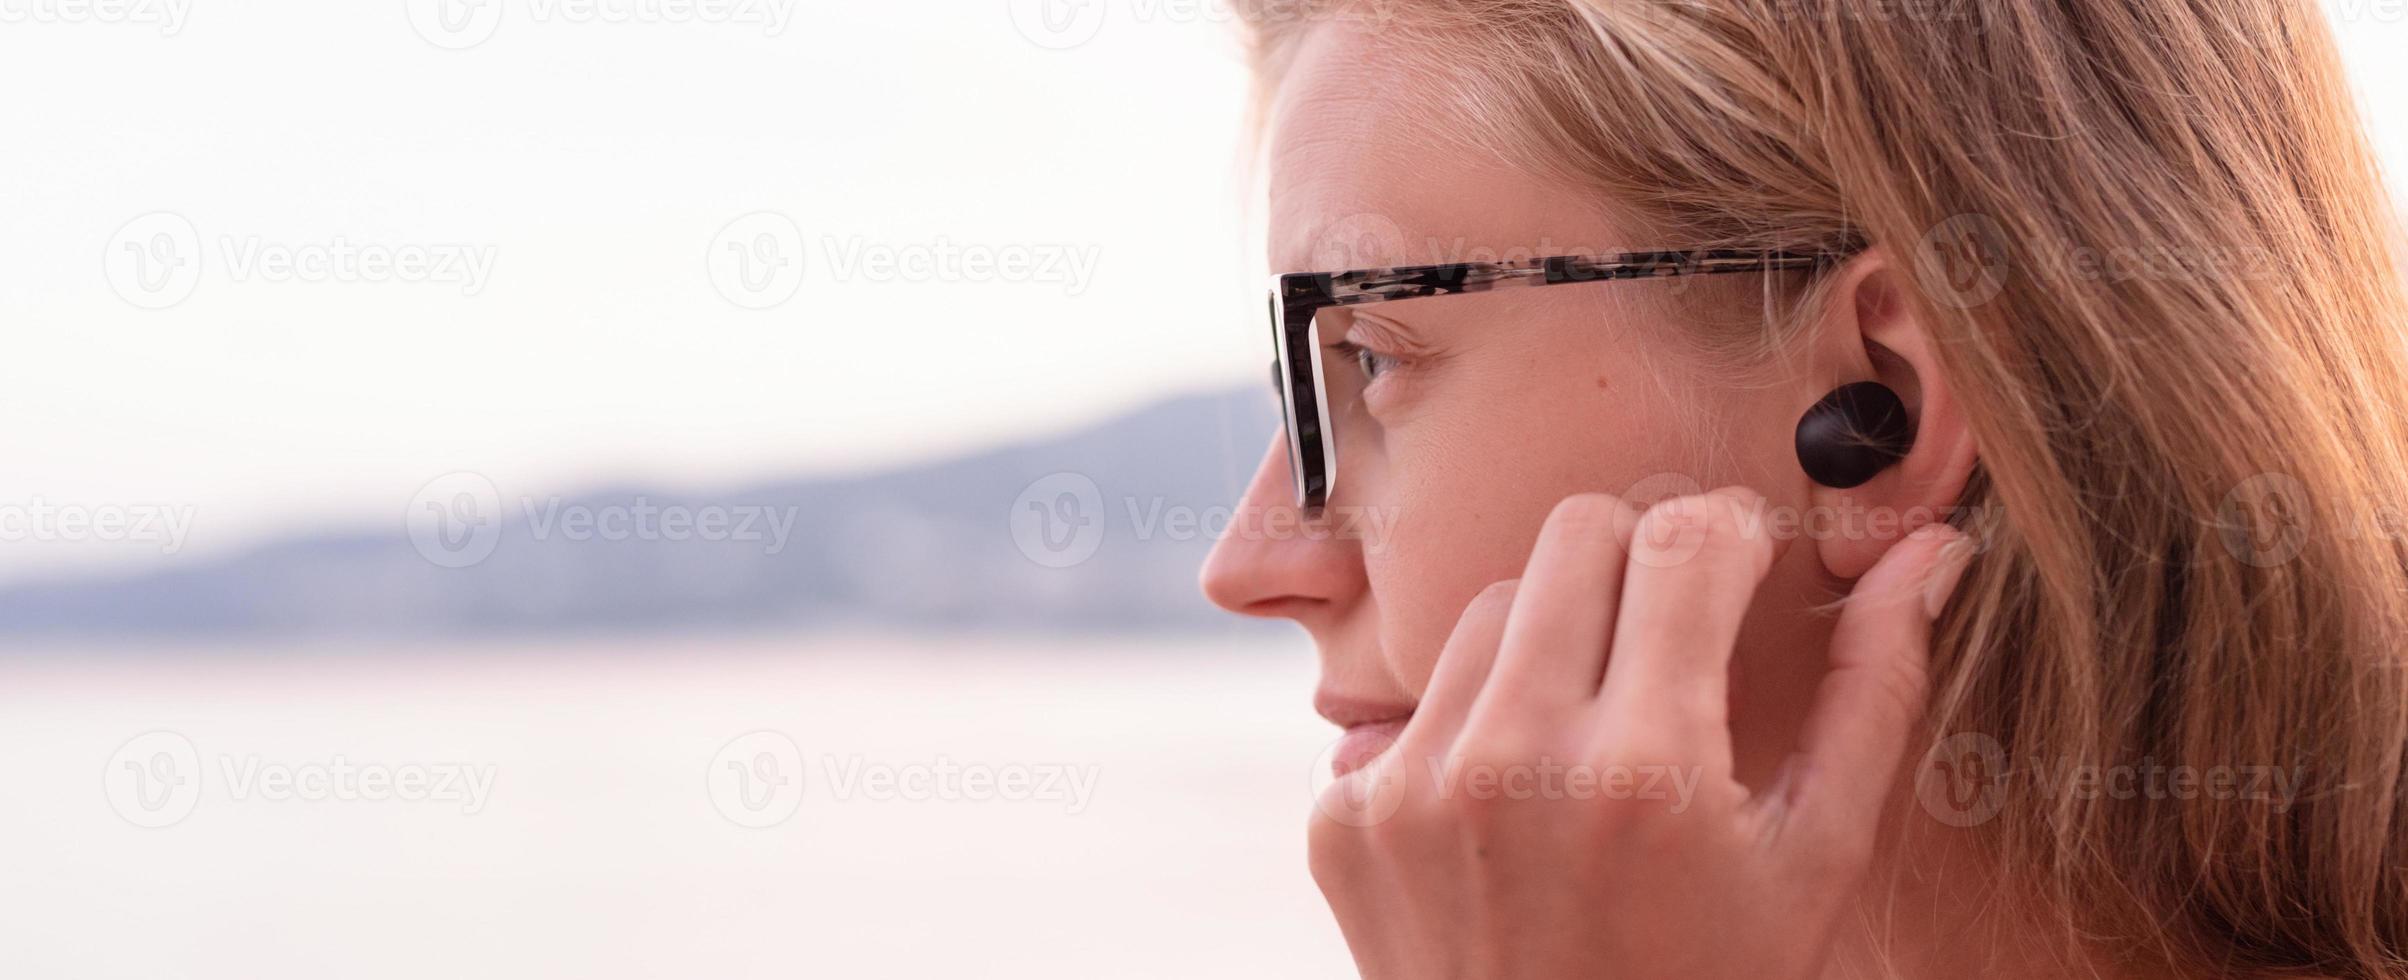 femme utilisant des écouteurs sans fil, bord de mer en arrière-plan photo